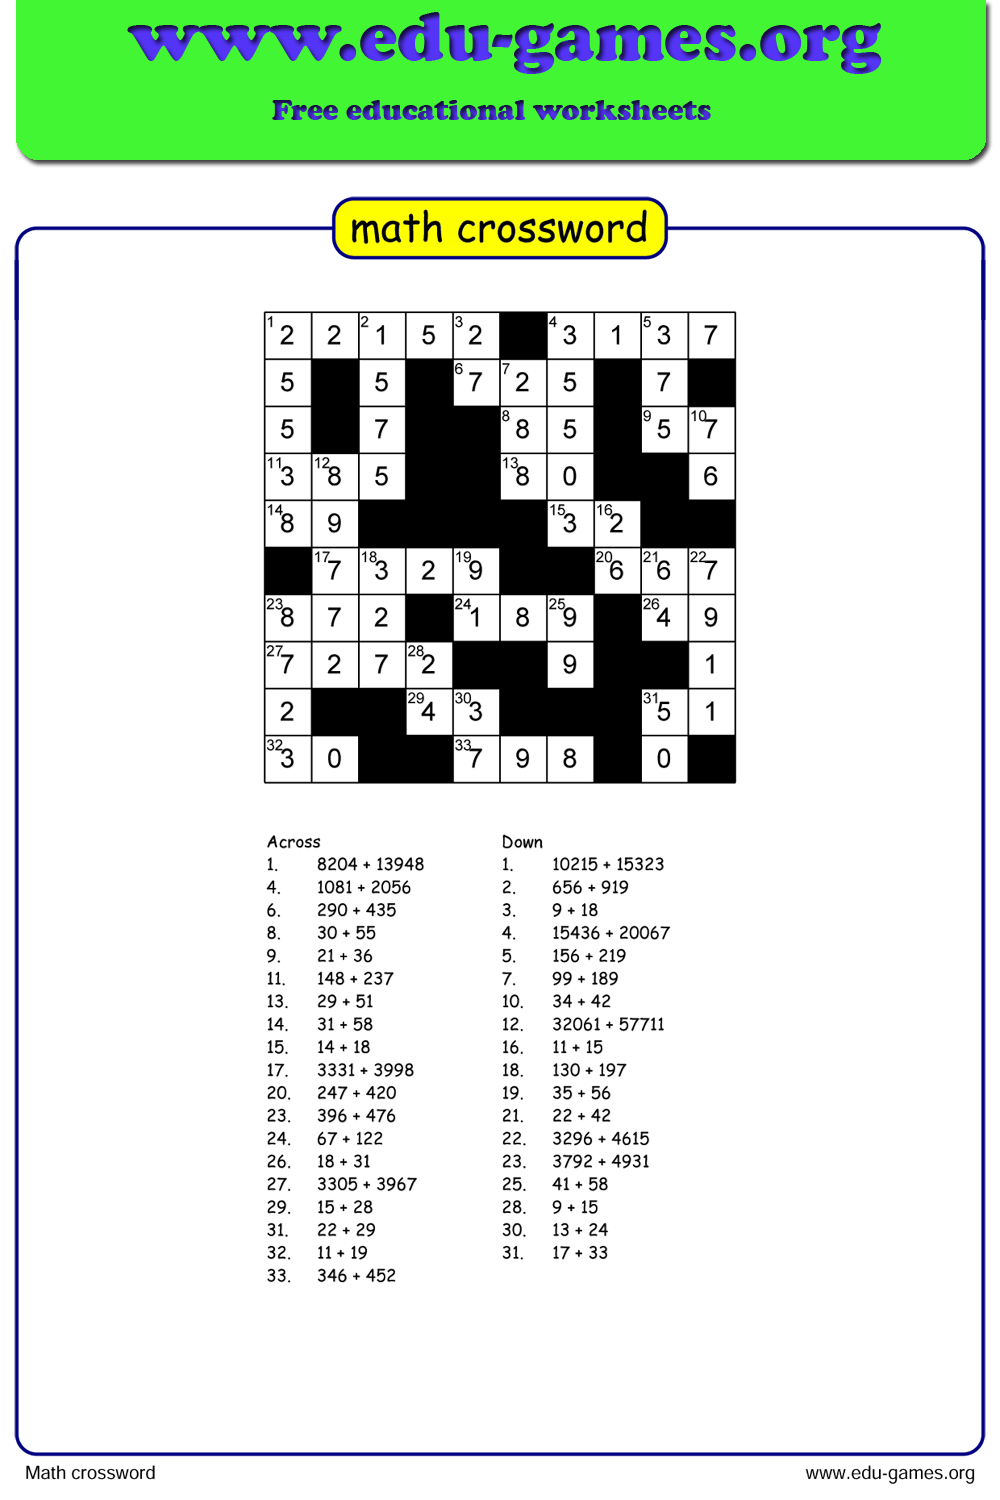 Printable Nea Crossword Puzzles